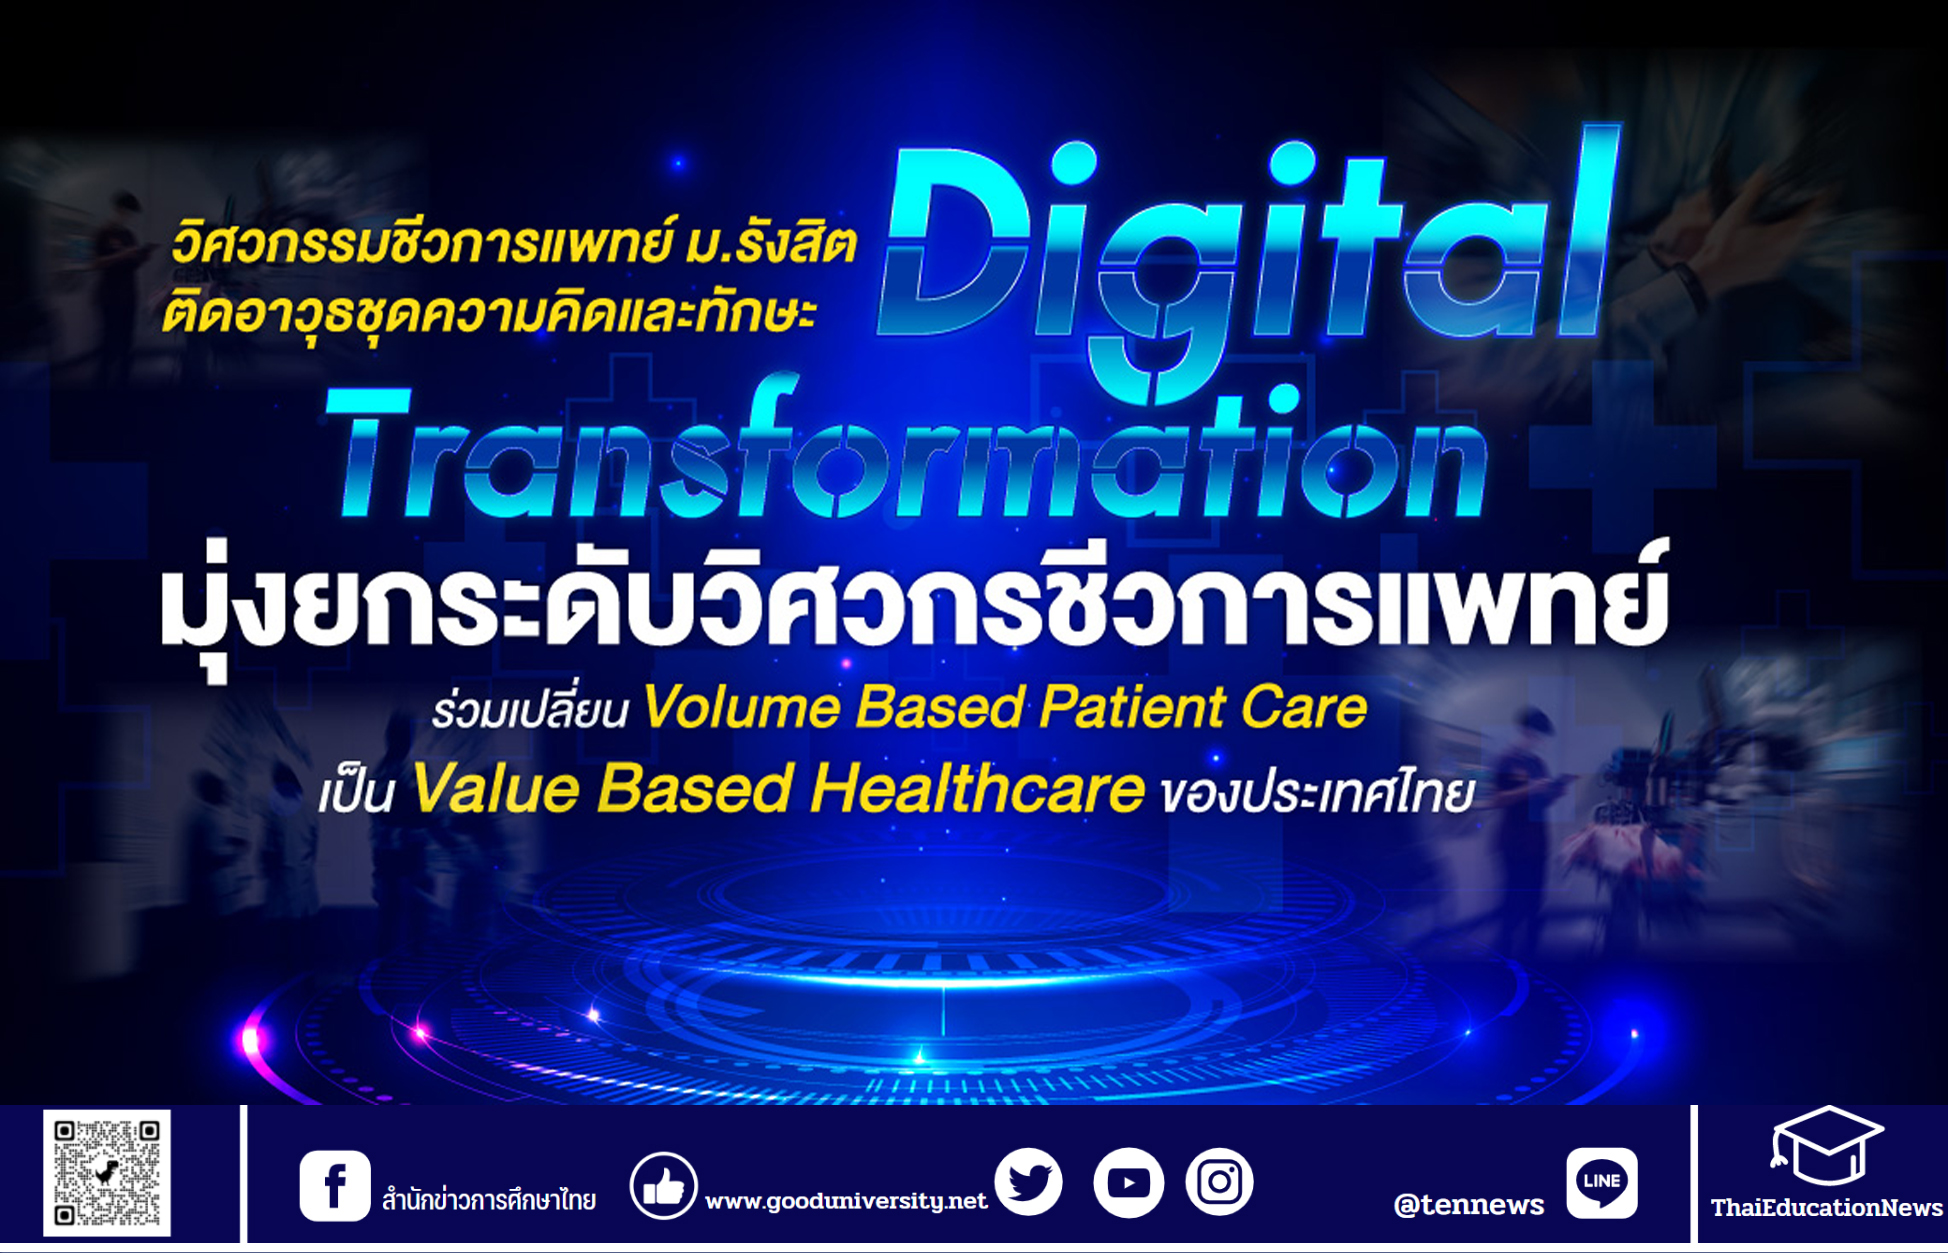 วิศวกรรมชีวการแพทย์ ม.รังสิต ติดอาวุธชุดความคิดและทักษะ Digital Transformation มุ่งยกระดับวิศวกรชีวการแพทย์ เพื่อร่วมเปลี่ยน Volume Based Patient Care เป็น Value Based Healthcare ของไทย